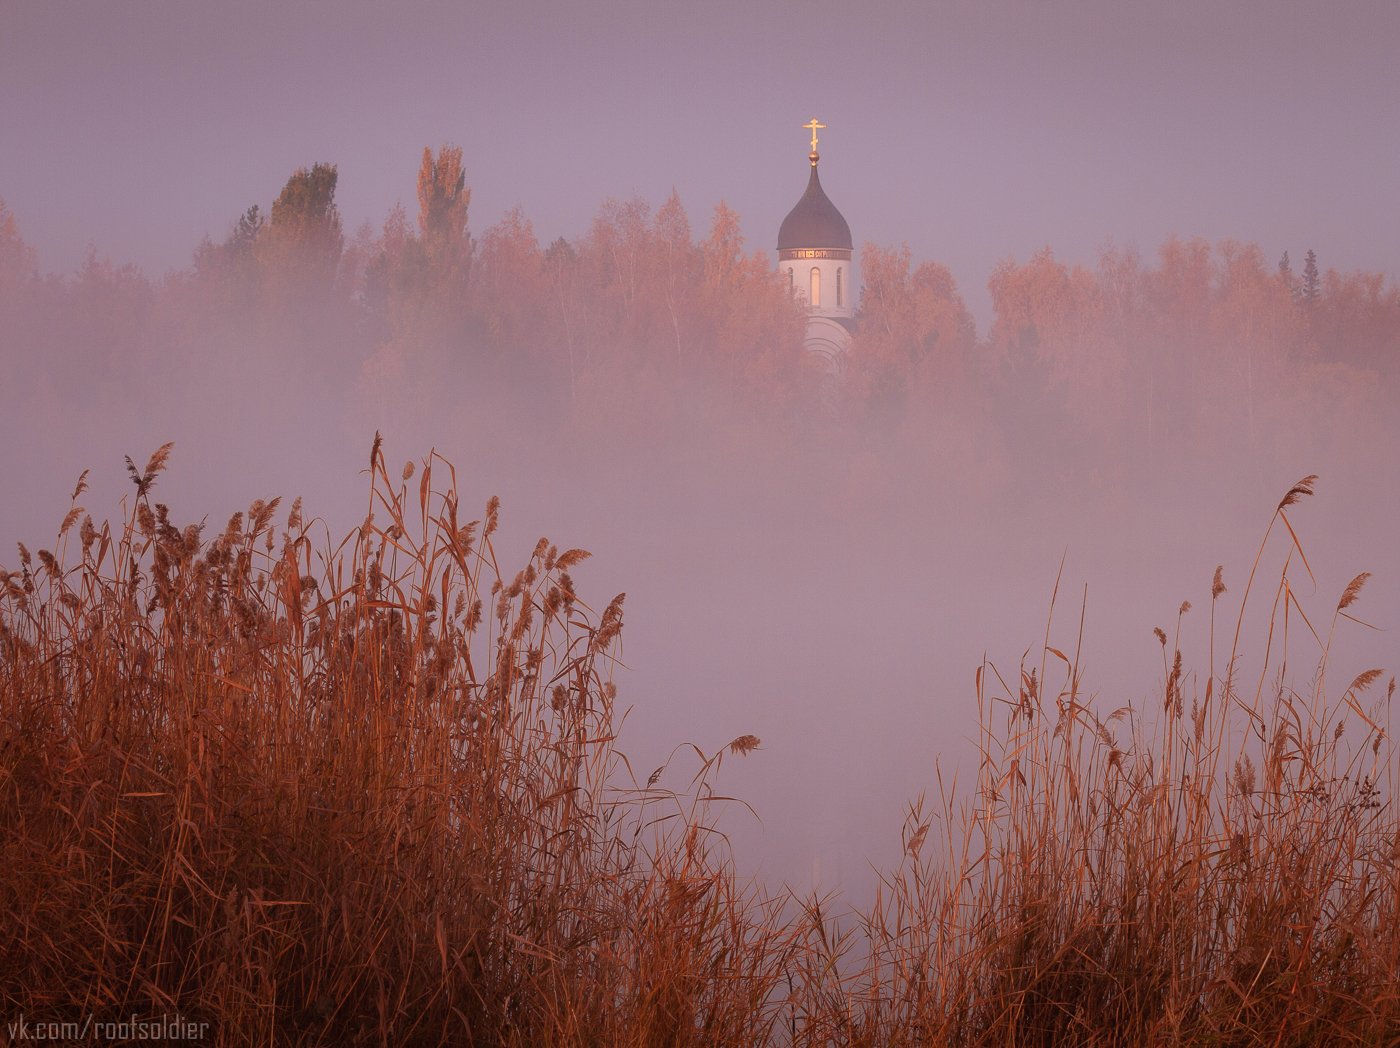 Осень, парк, церковь, туман, рассвет, озеро, Омск, Россия, пейзаж, Голубев Алексей